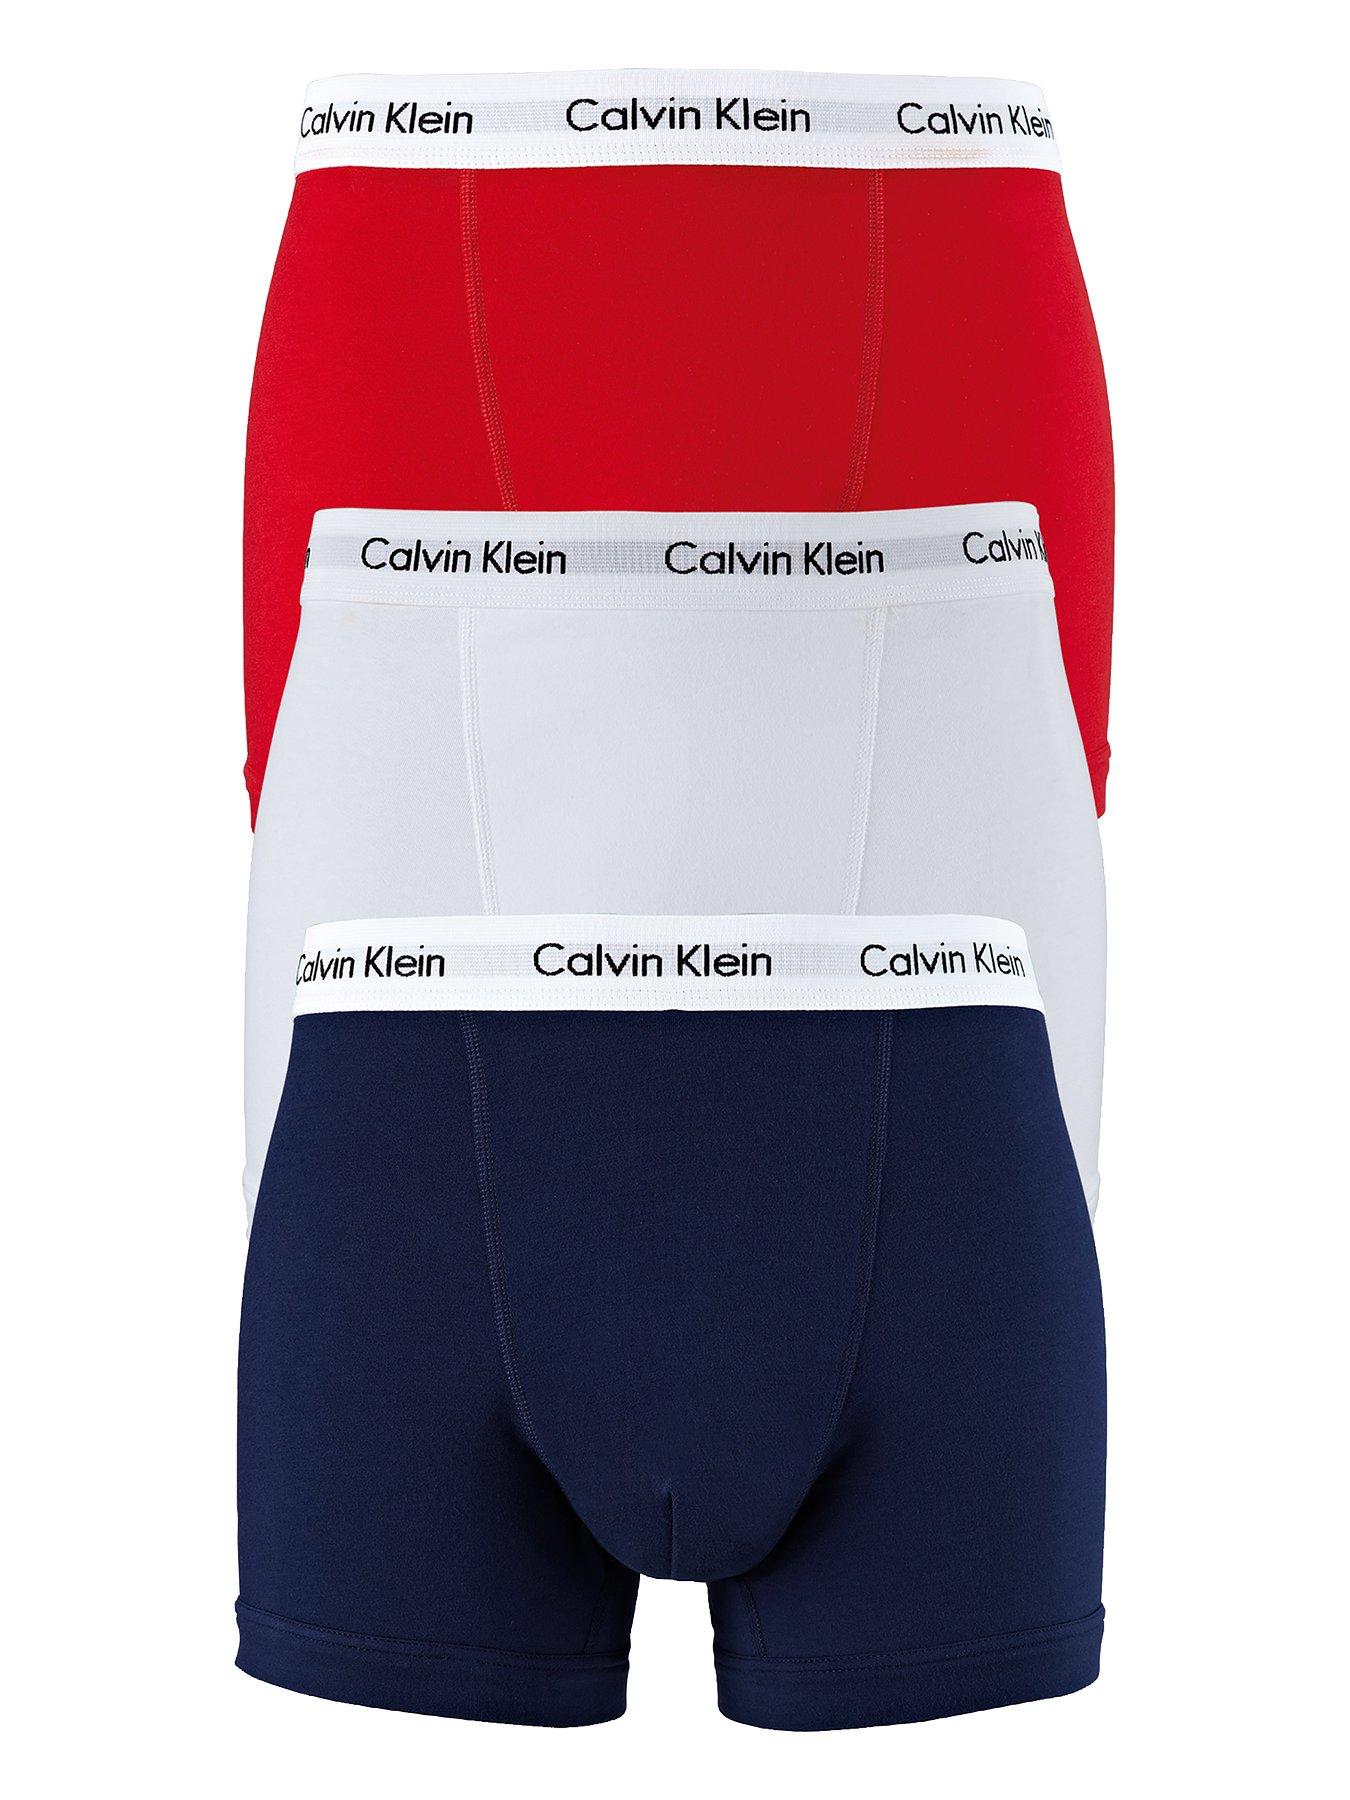 Calvin Klein 3 Pack of Trunks - Red/White/Navy | Very.co.uk